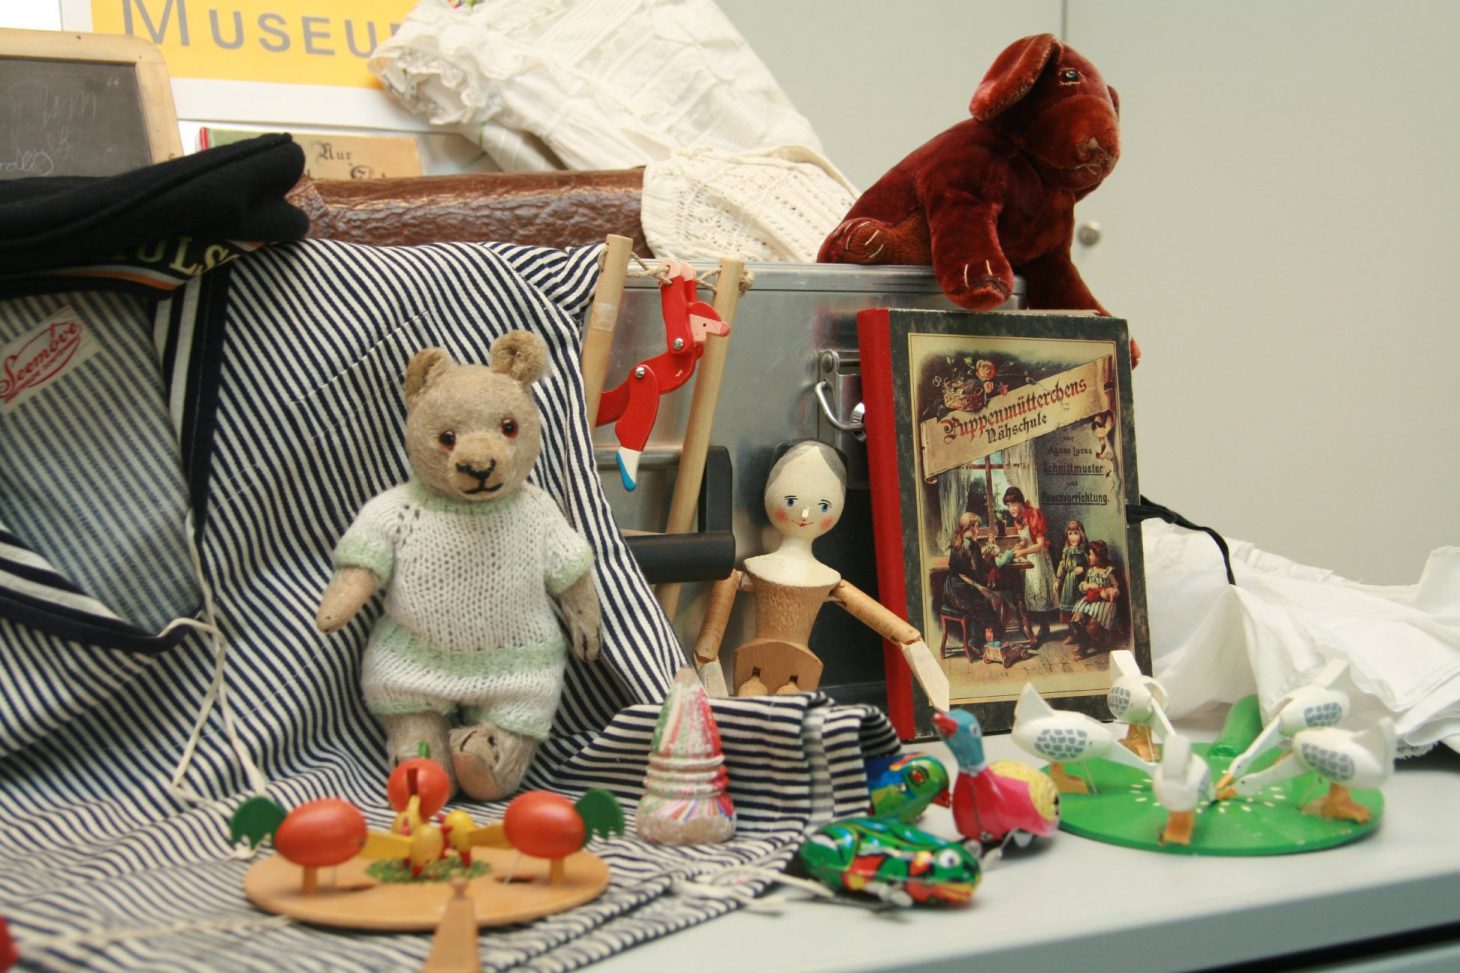 Objekte aus dem Museumskoffer: Ein Teddybär, eine hölzerne Puppe, ein Buch, ein Fischerhemd und Holzspielzeug